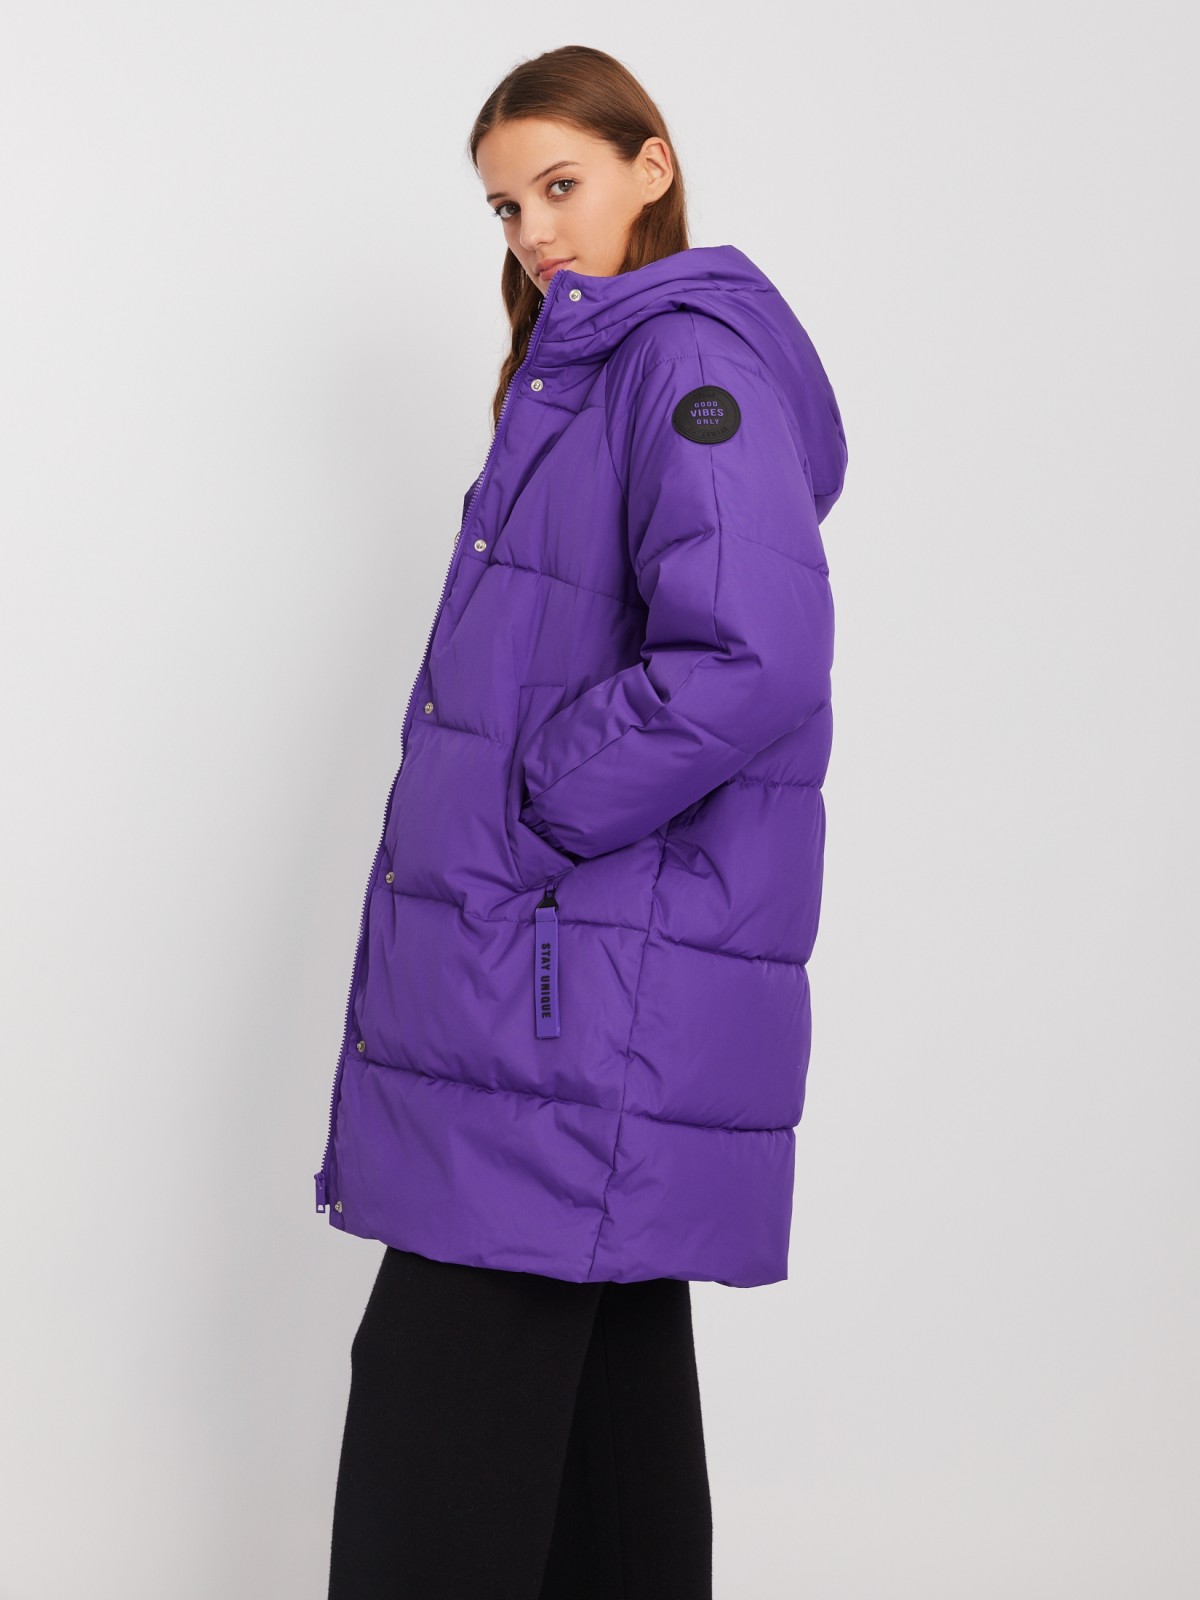 Тёплая куртка-пальто с капюшоном zolla 023425202104, цвет сливовый, размер XL